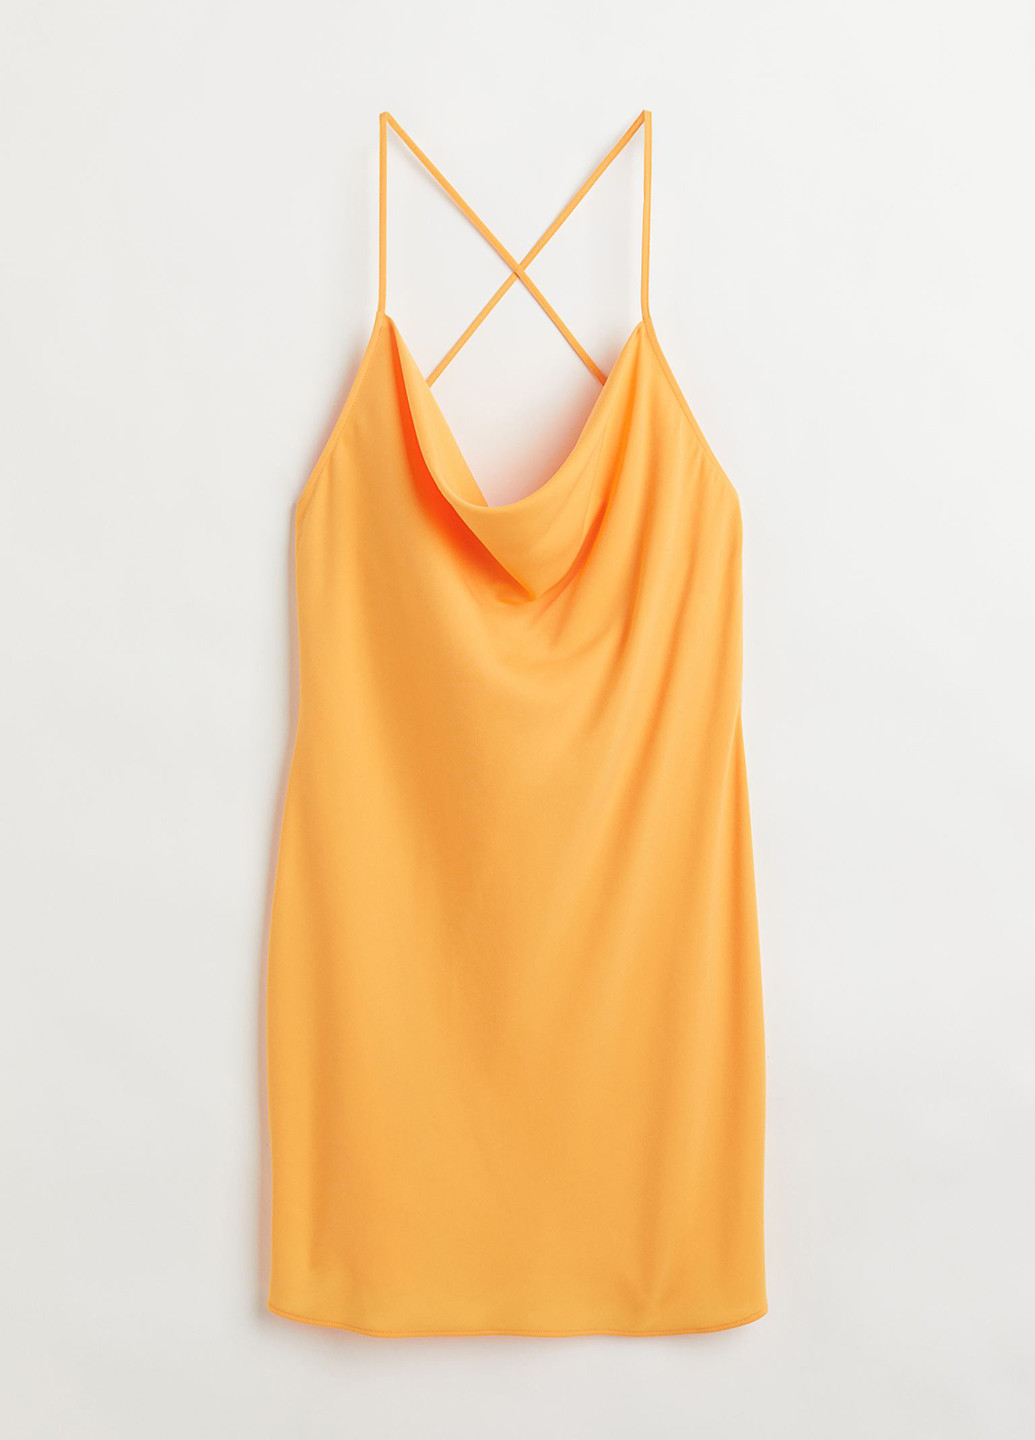 Желтое коктейльное платье платье-комбинация, с открытой спиной H&M однотонное